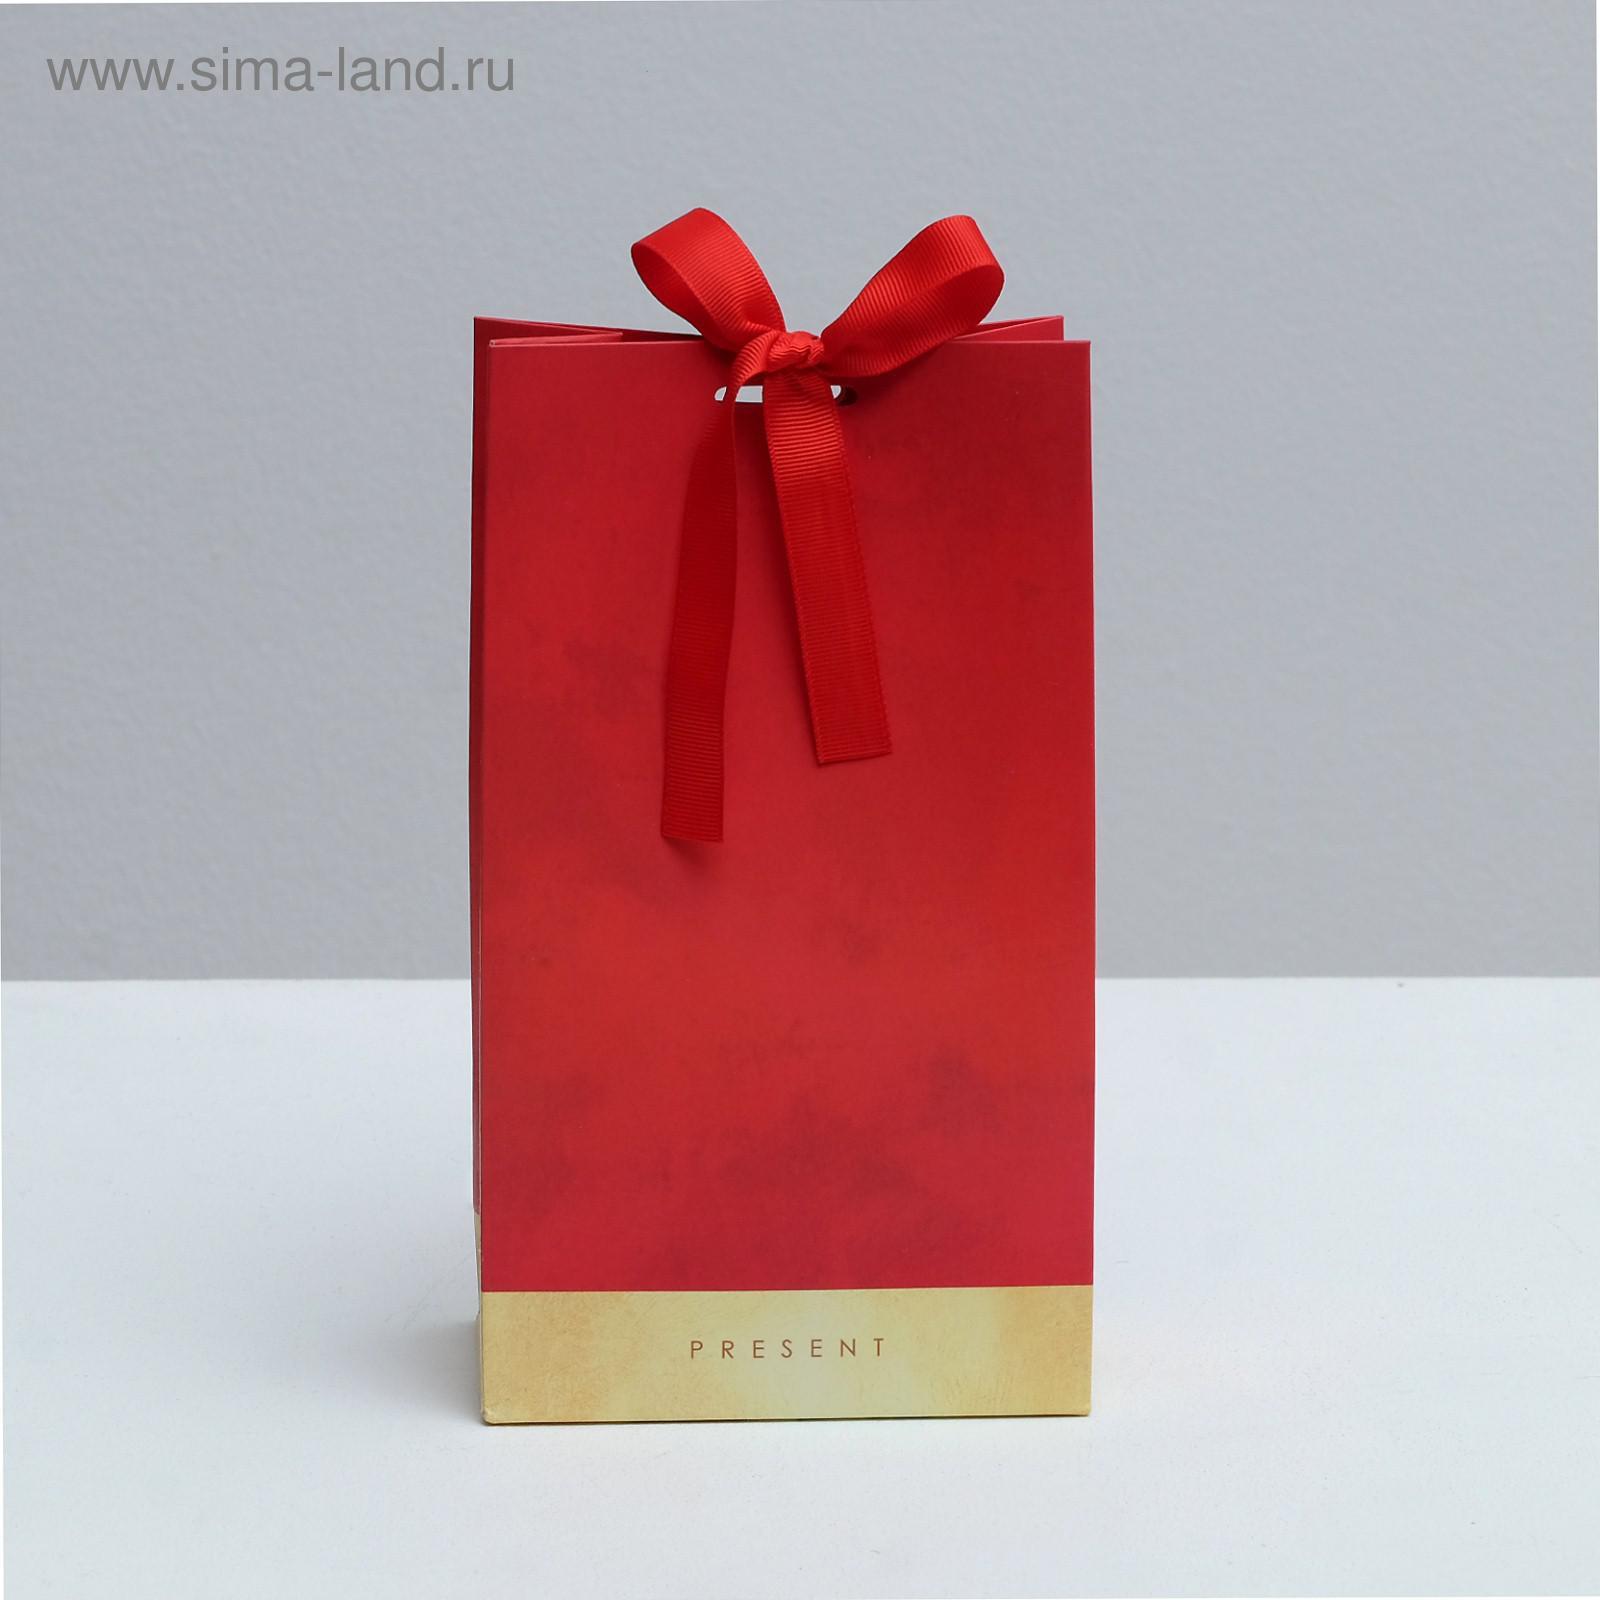 Пакет подарочный с лентой PRESENT, 13 × 23 × 7 см